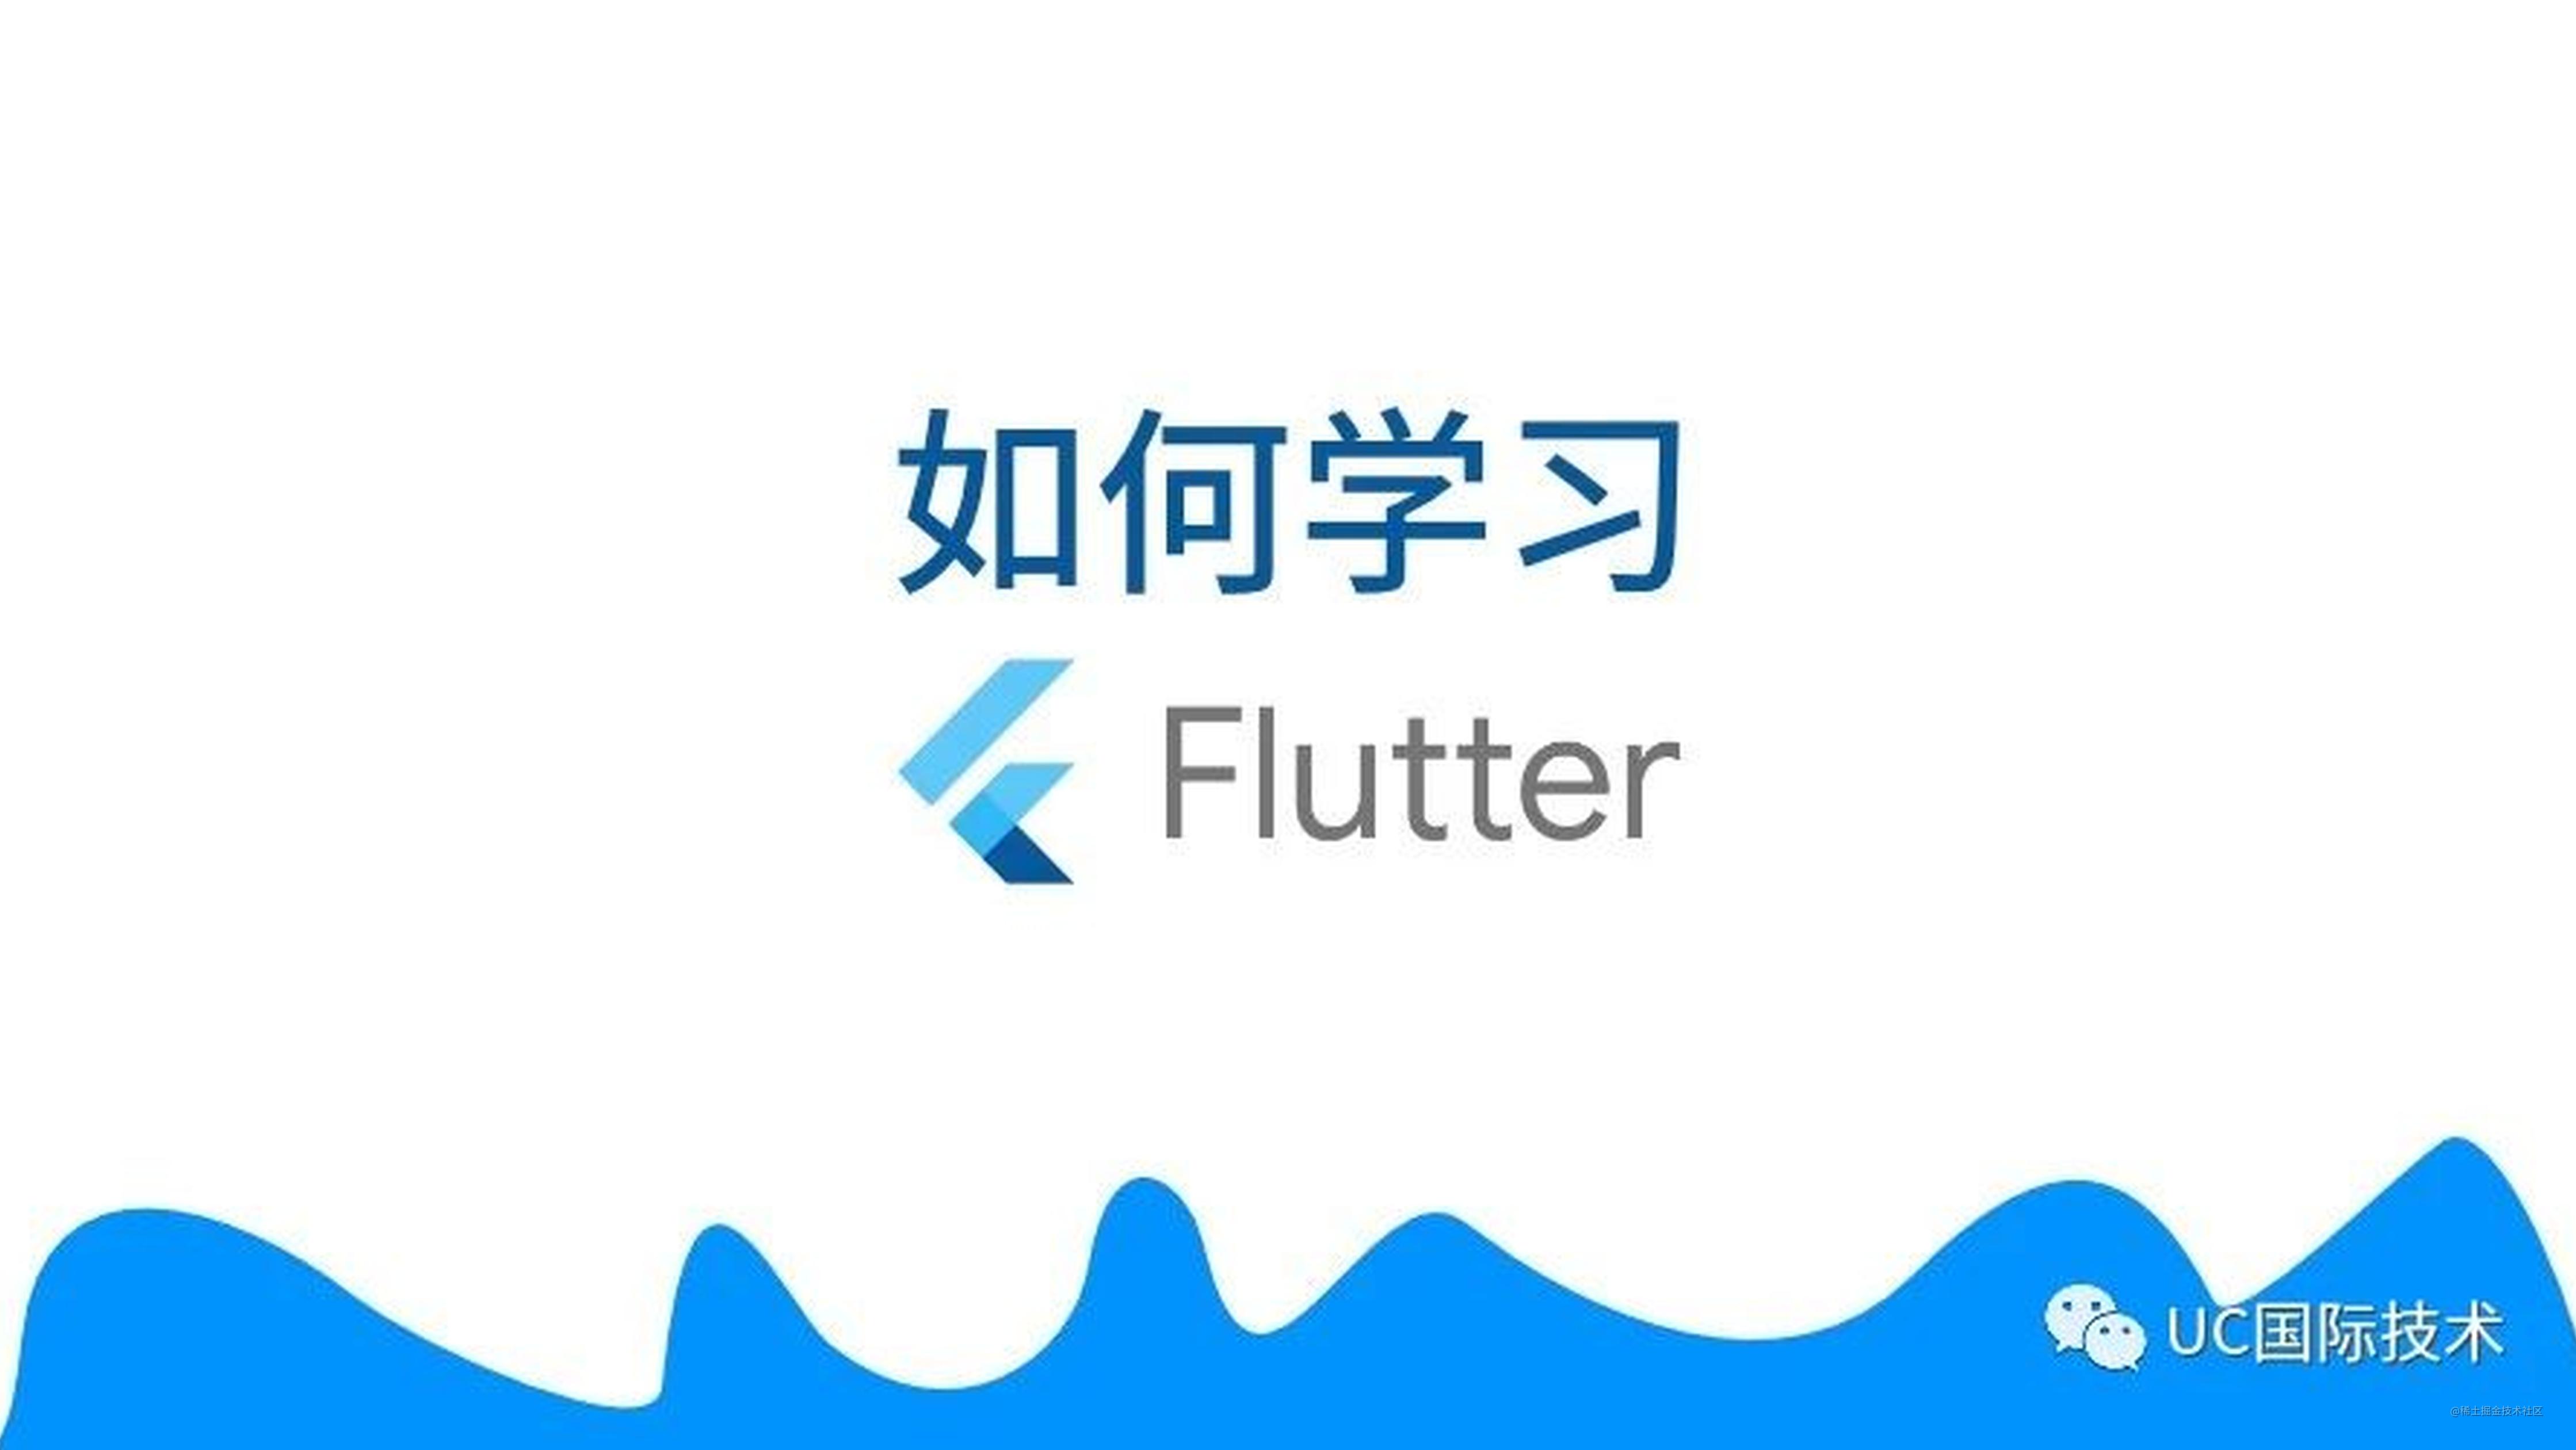 我想学 Flutter，但是我不知道应该如何开始？